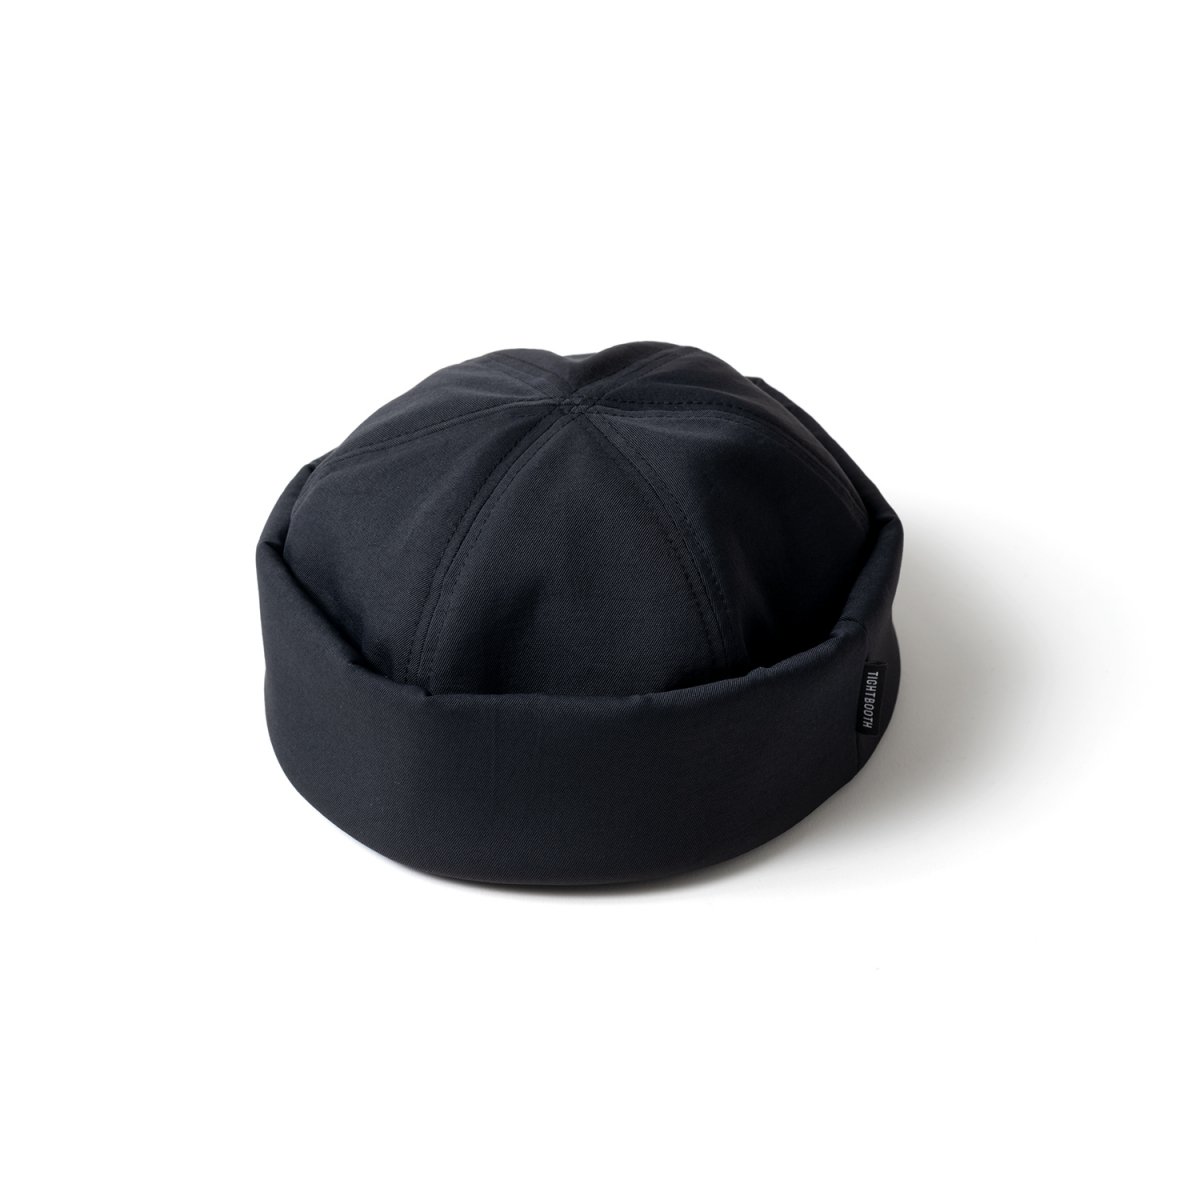 タイトブースロールキャップ - 帽子